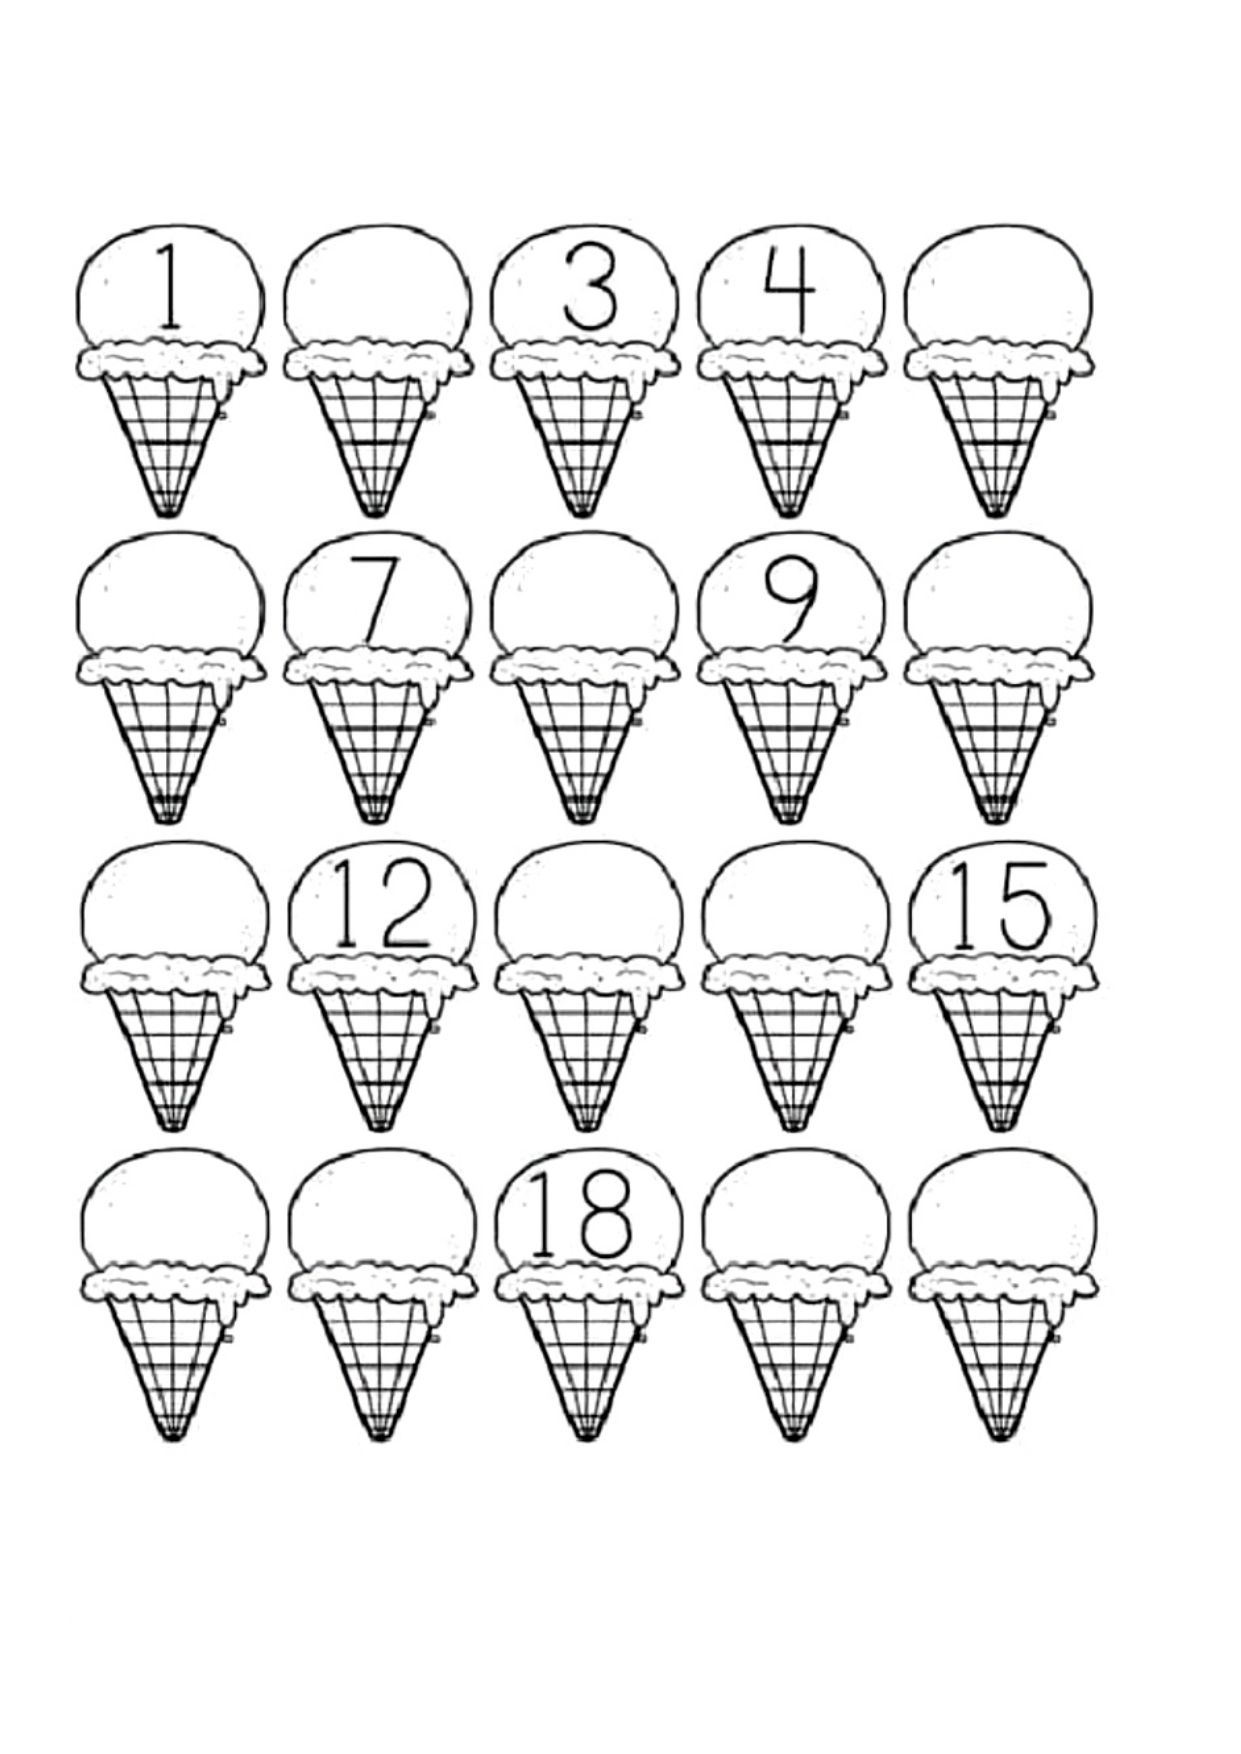 1 20 worksheet. Задания мороженое для дошкольников. Задания для детей по теме мороженое. Развивающие задания для дошкольников мороженое. Мороженое задание для малышей.